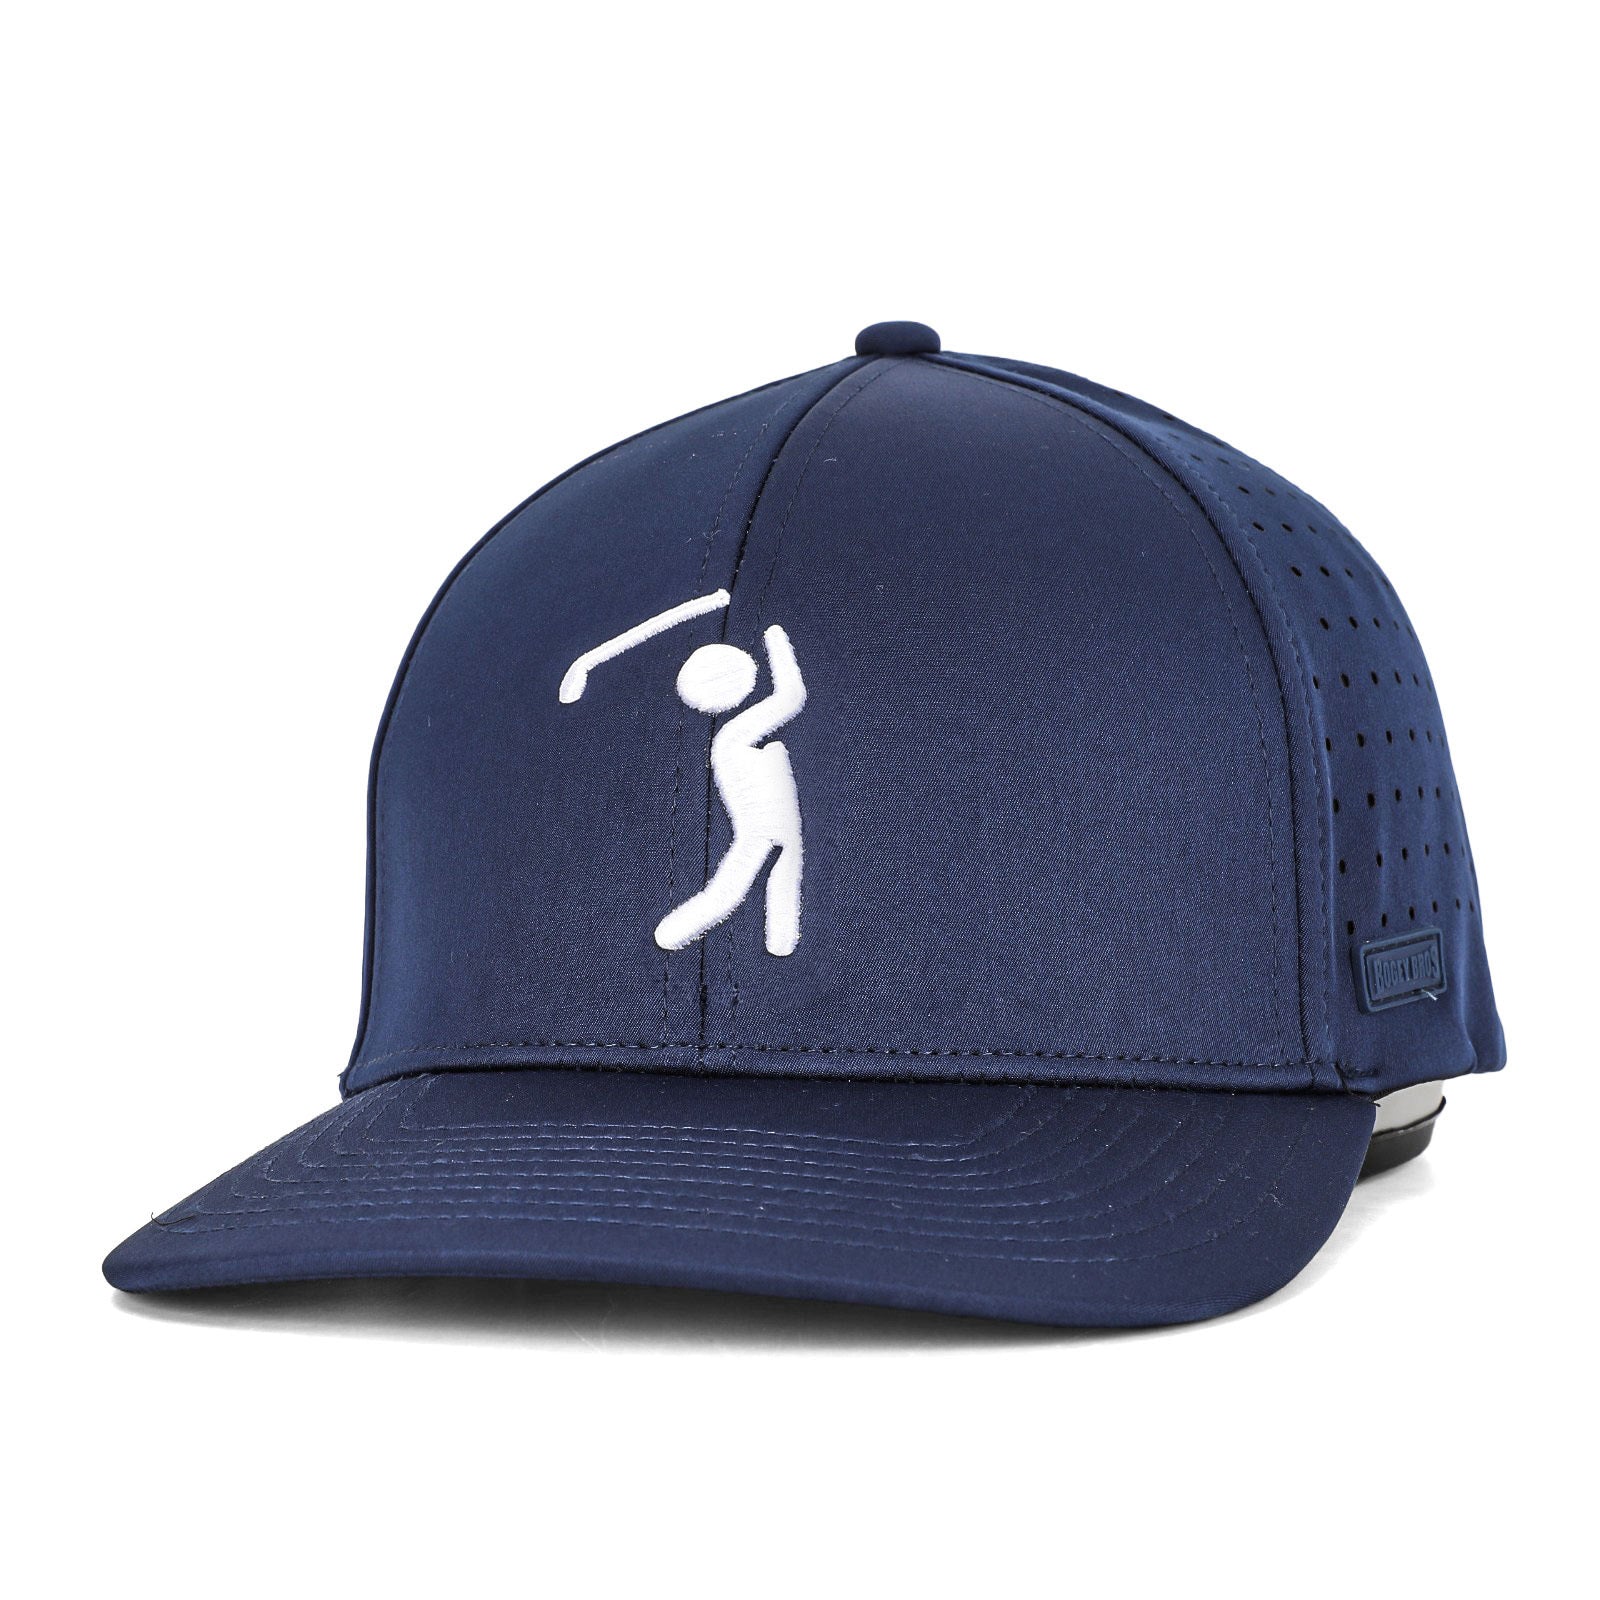 Bogeyman Navy - Performance Golf Hat - Stretch Fit